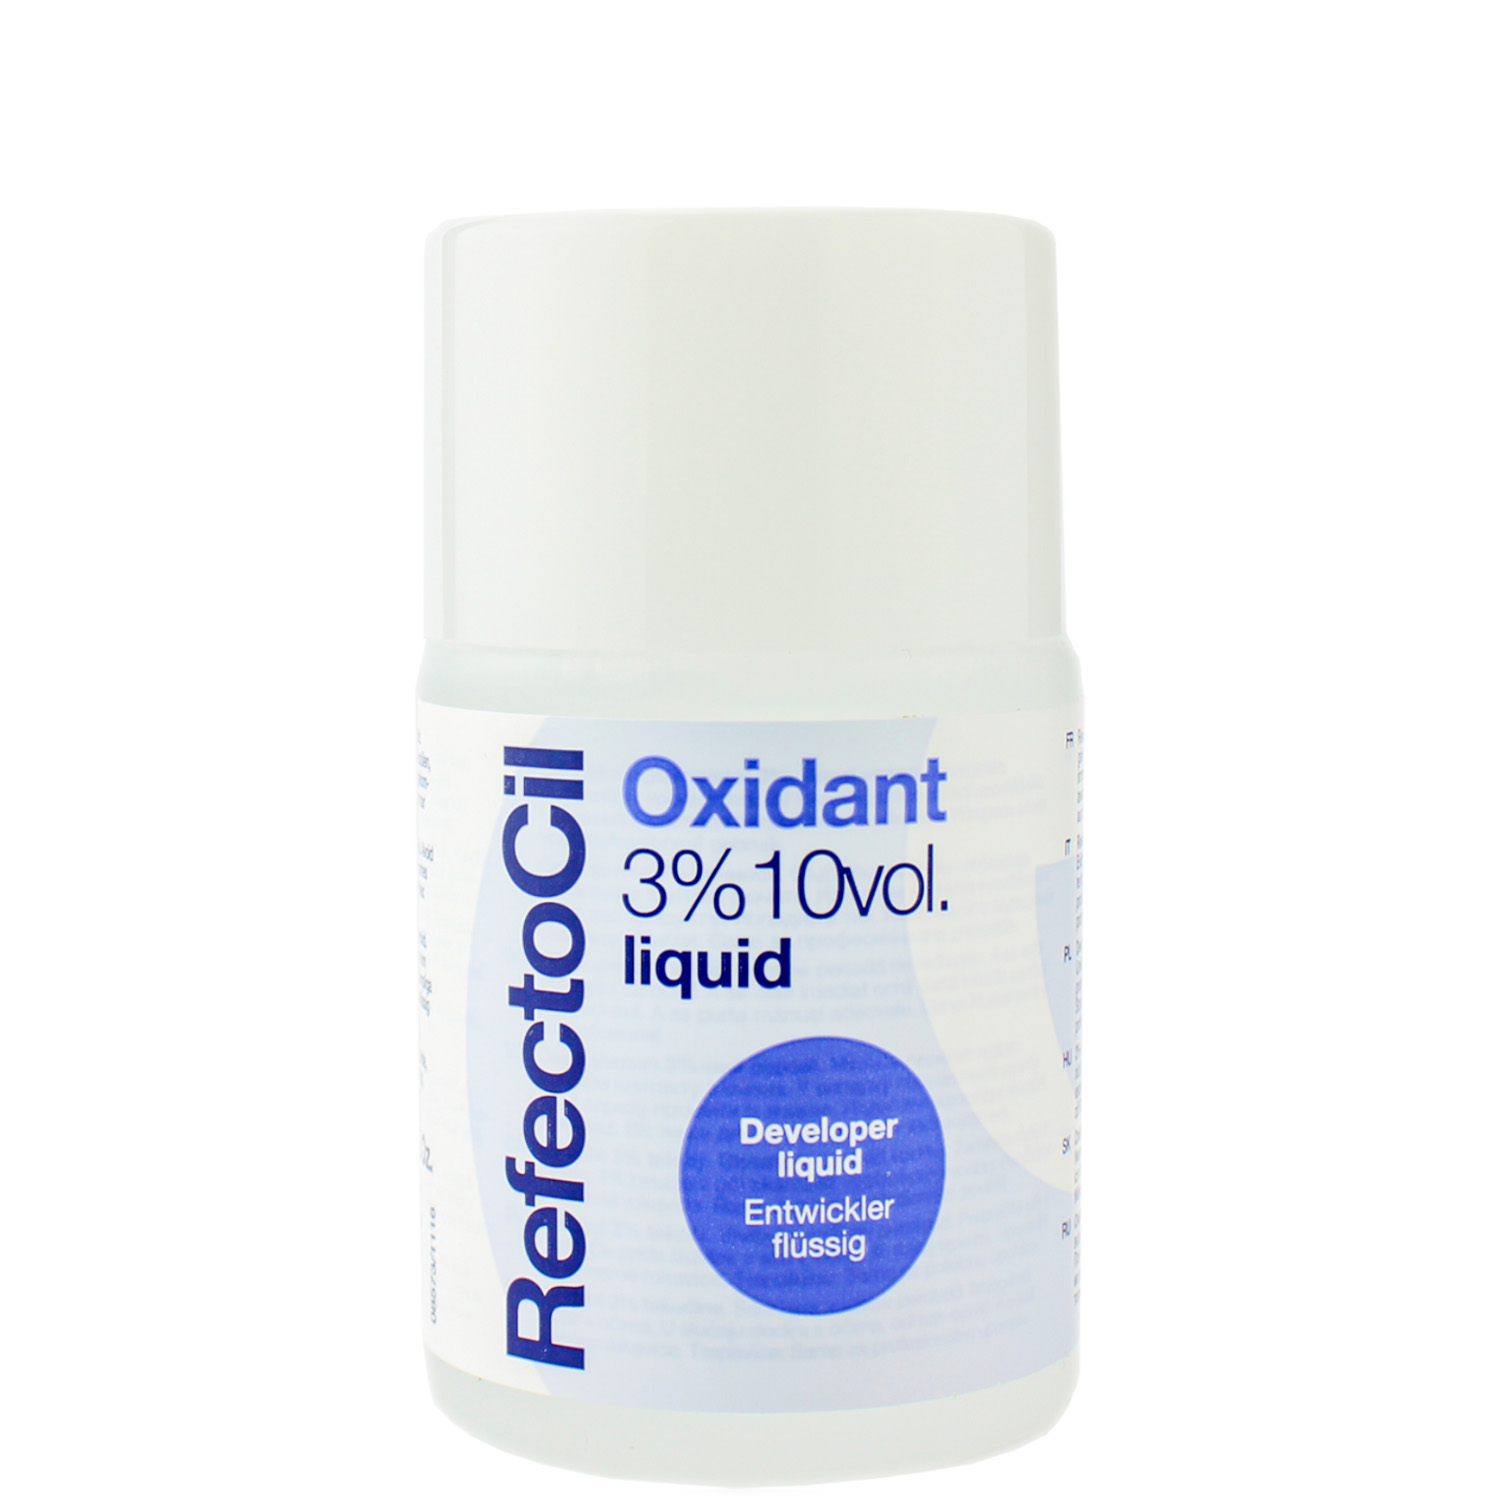 RefectoCil Oxidant Liquid 3% 10vol. Entwicklerflüssigkeit 100ml